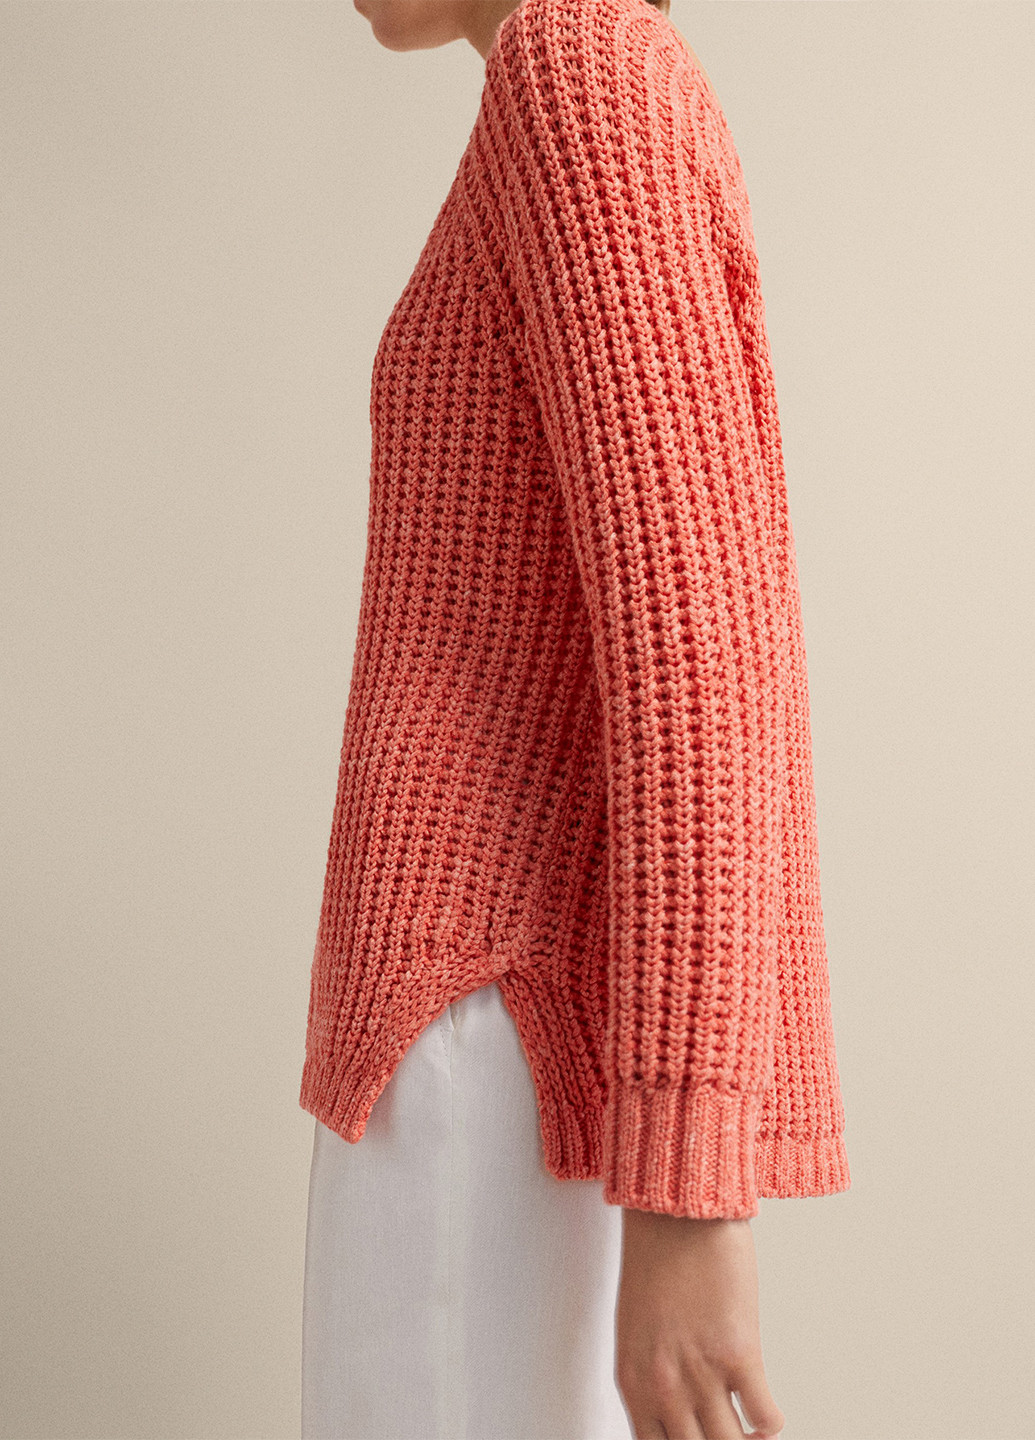 Персиковый демисезонный пуловер пуловер Massimo Dutti